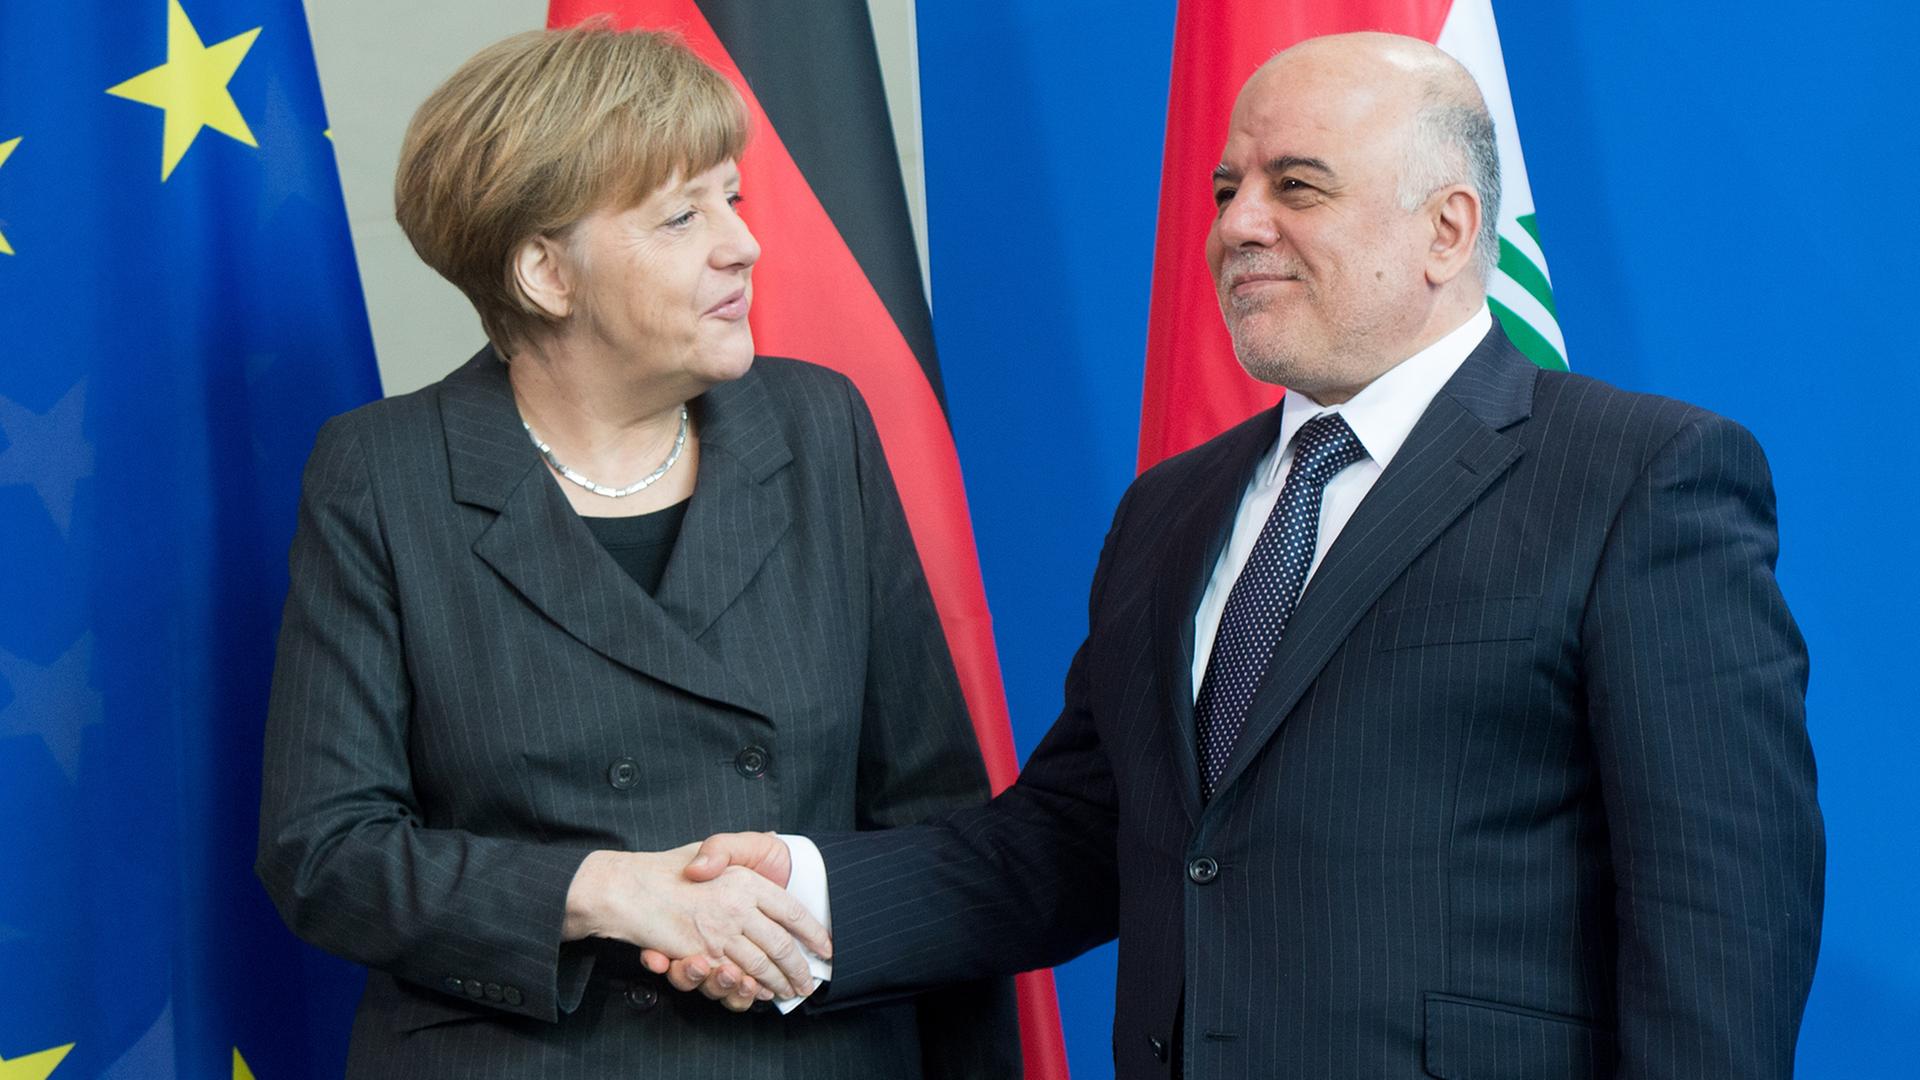 Bundeskanzlerin Angela Merkel (CDU) und der irakische Ministerpräsident Haider al-Abadi bei einem Treffen in Berlin am 06.02.2015